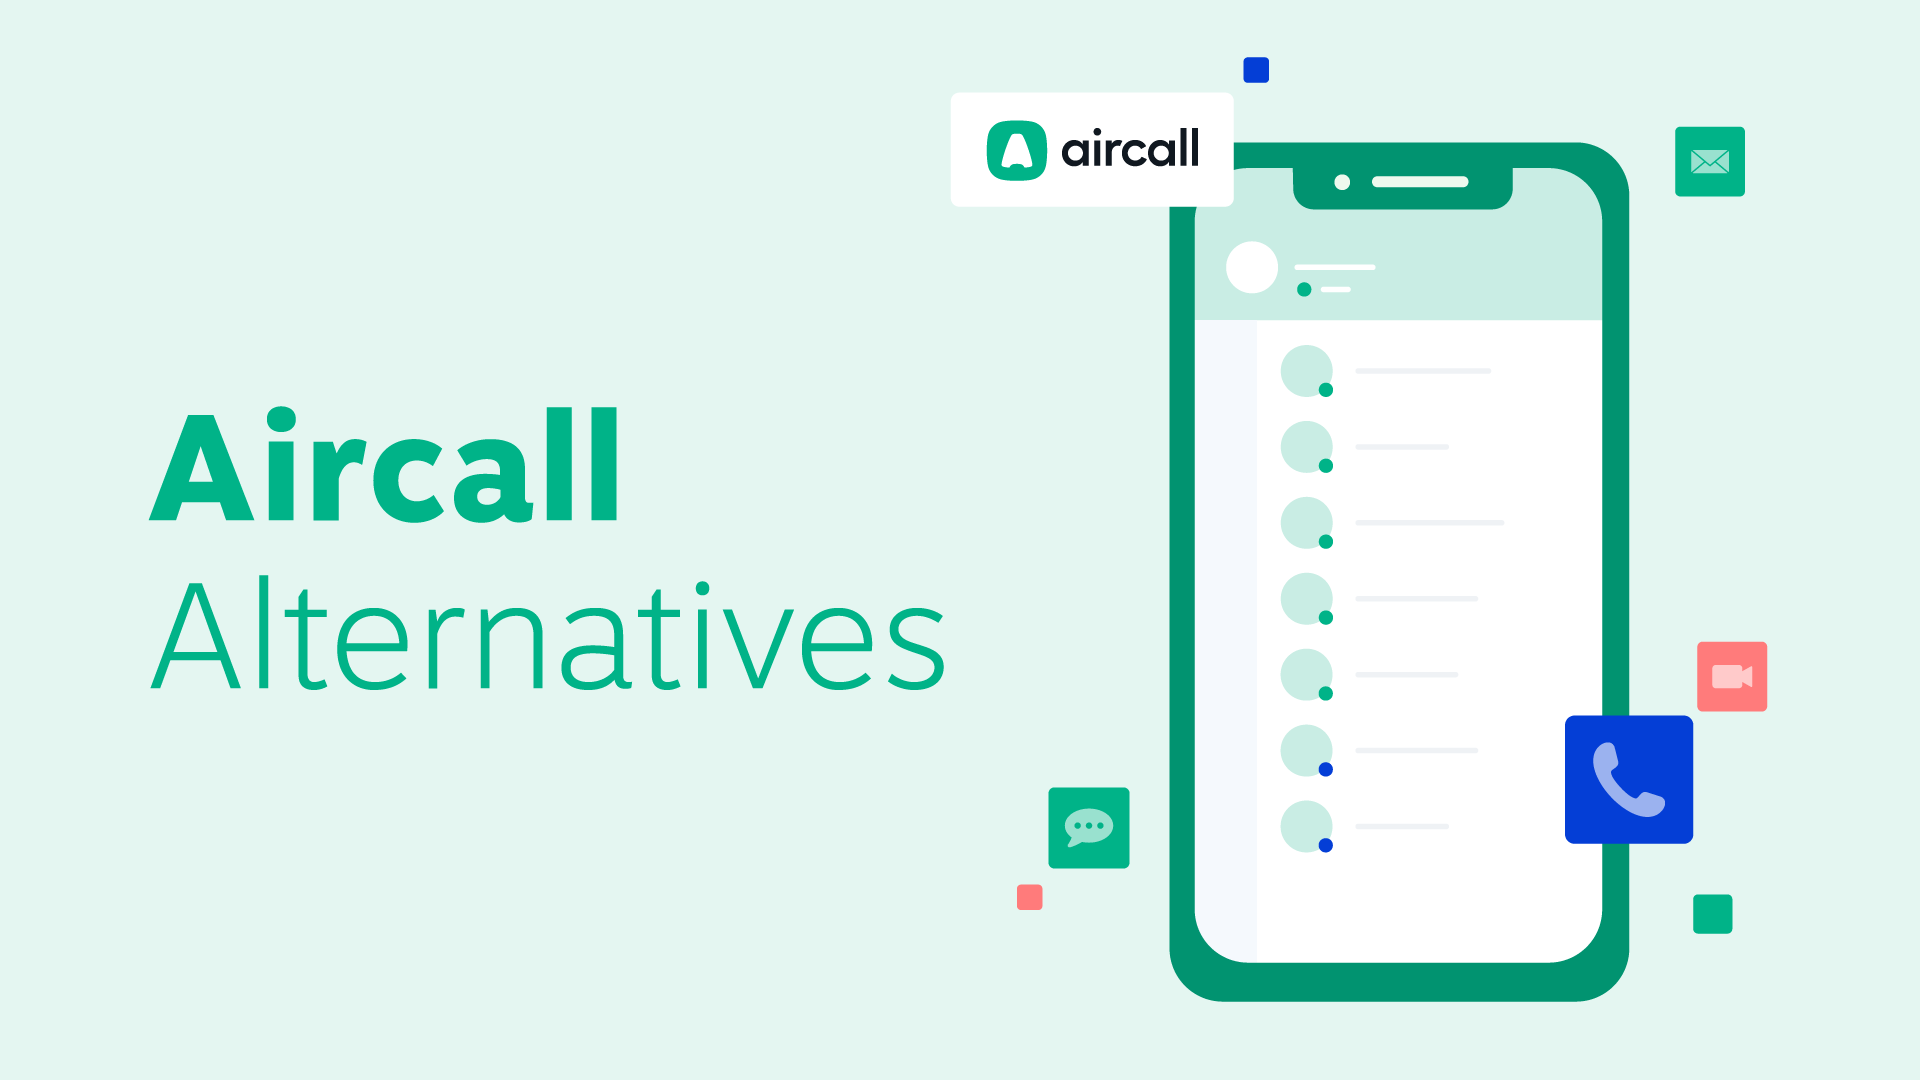 aircall desktop app